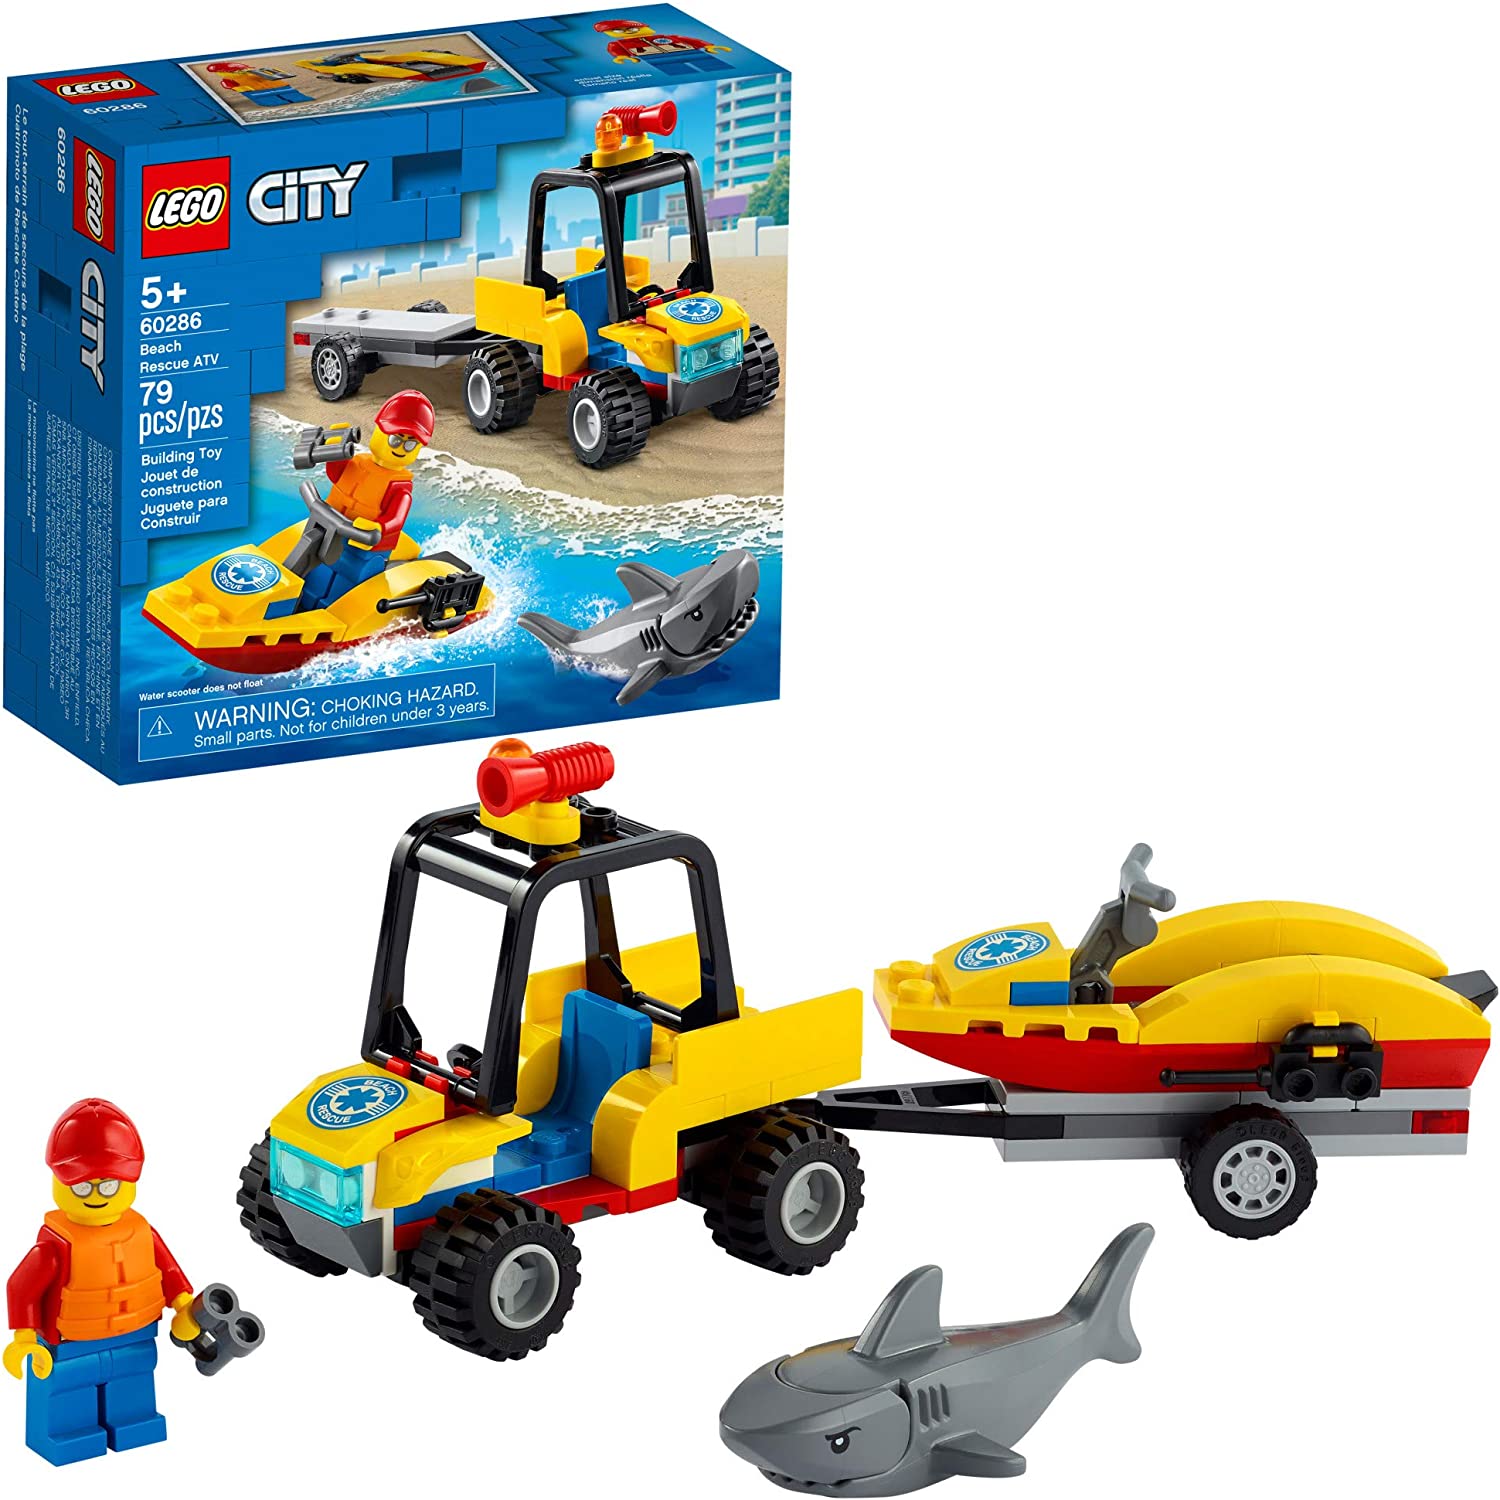 LEGO City Beach Rescue ATV 60286